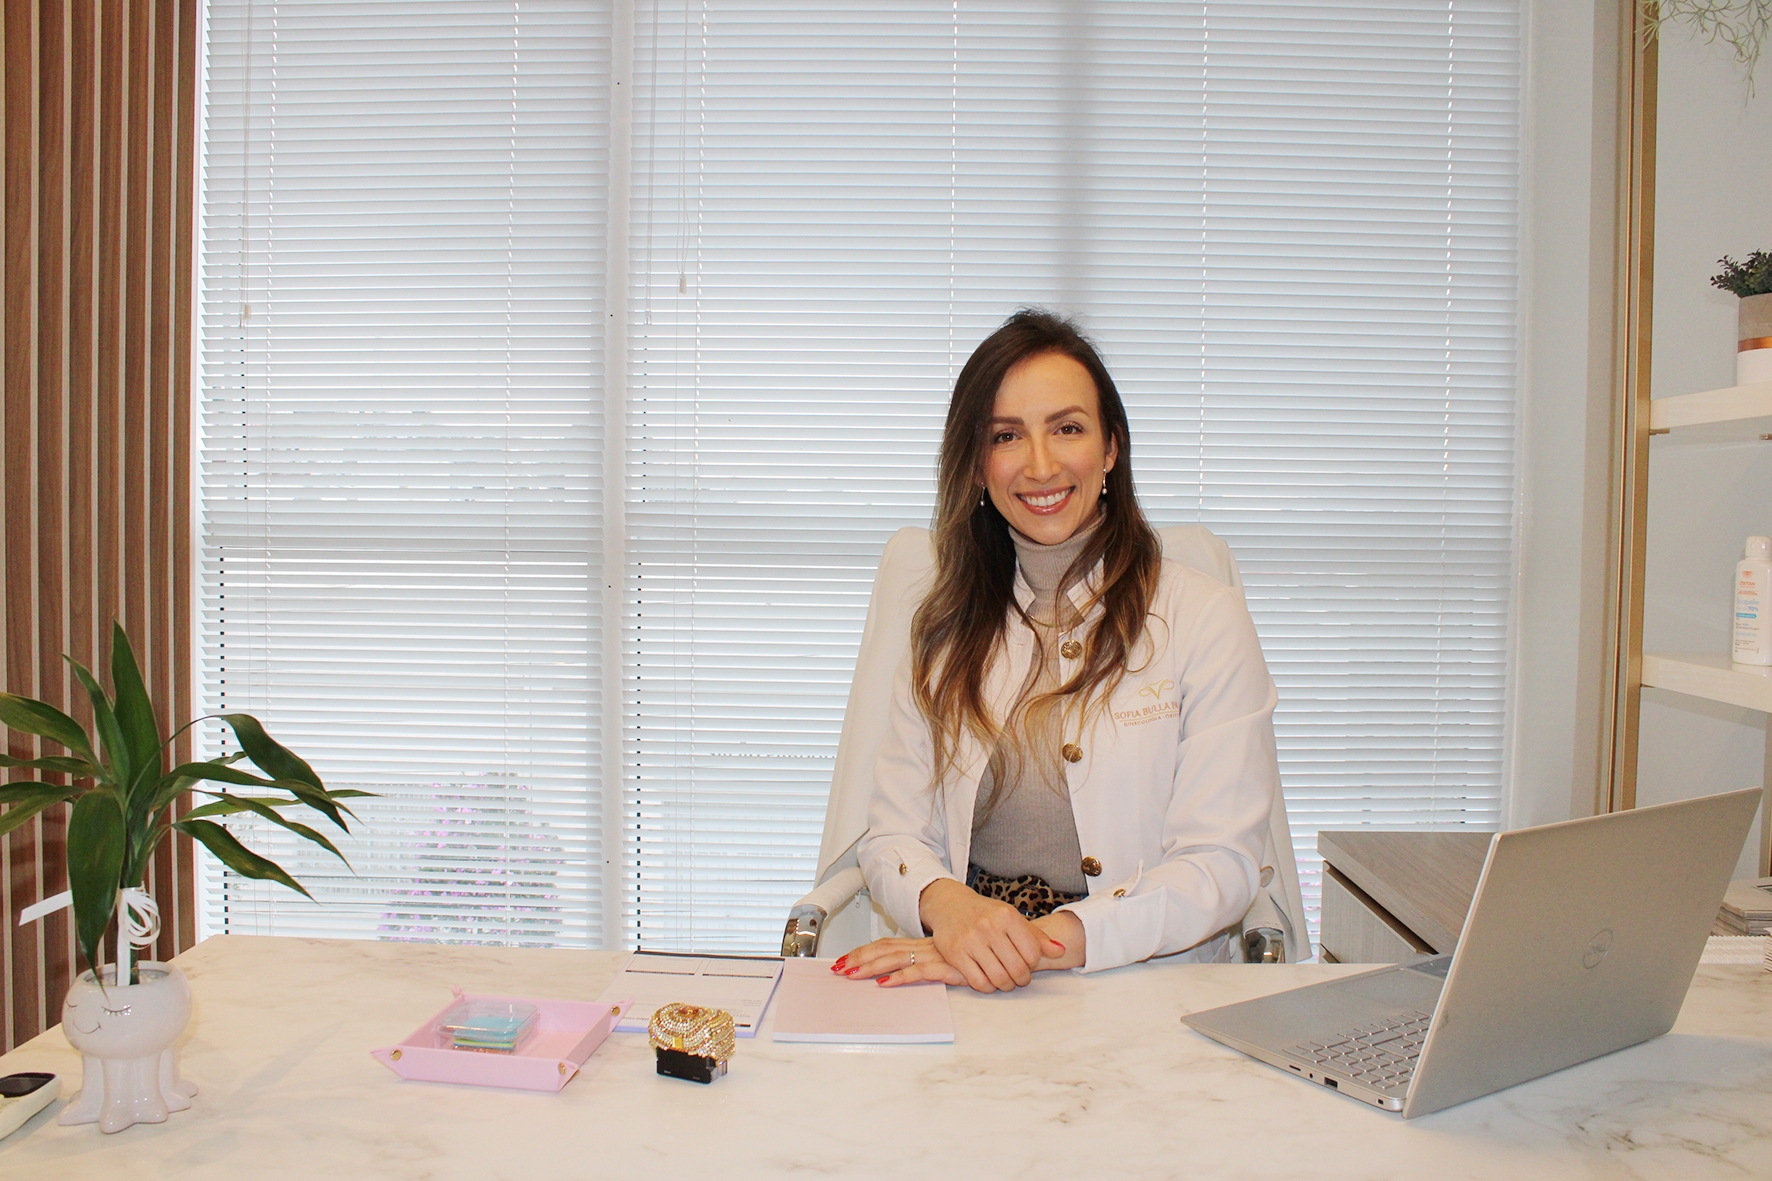  médica ginecologista, Sofia Bulla Paviani, é uma grande defensora do aleitamento materno.  - Karine Bergozza